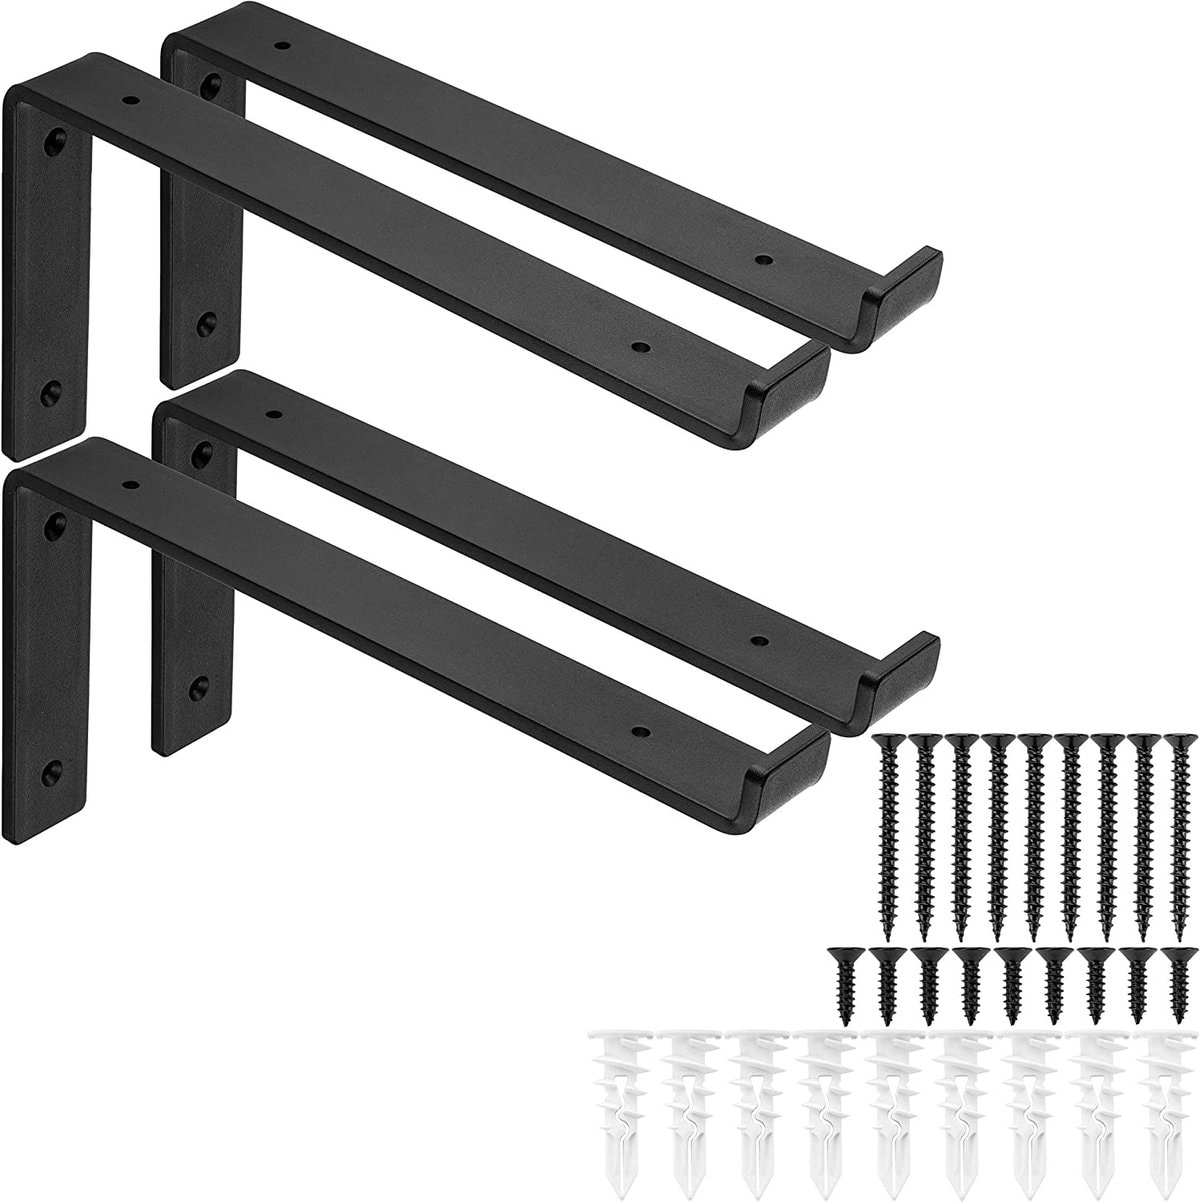 Pantry Organization Ideas - four black metal shelf brackets with screws.